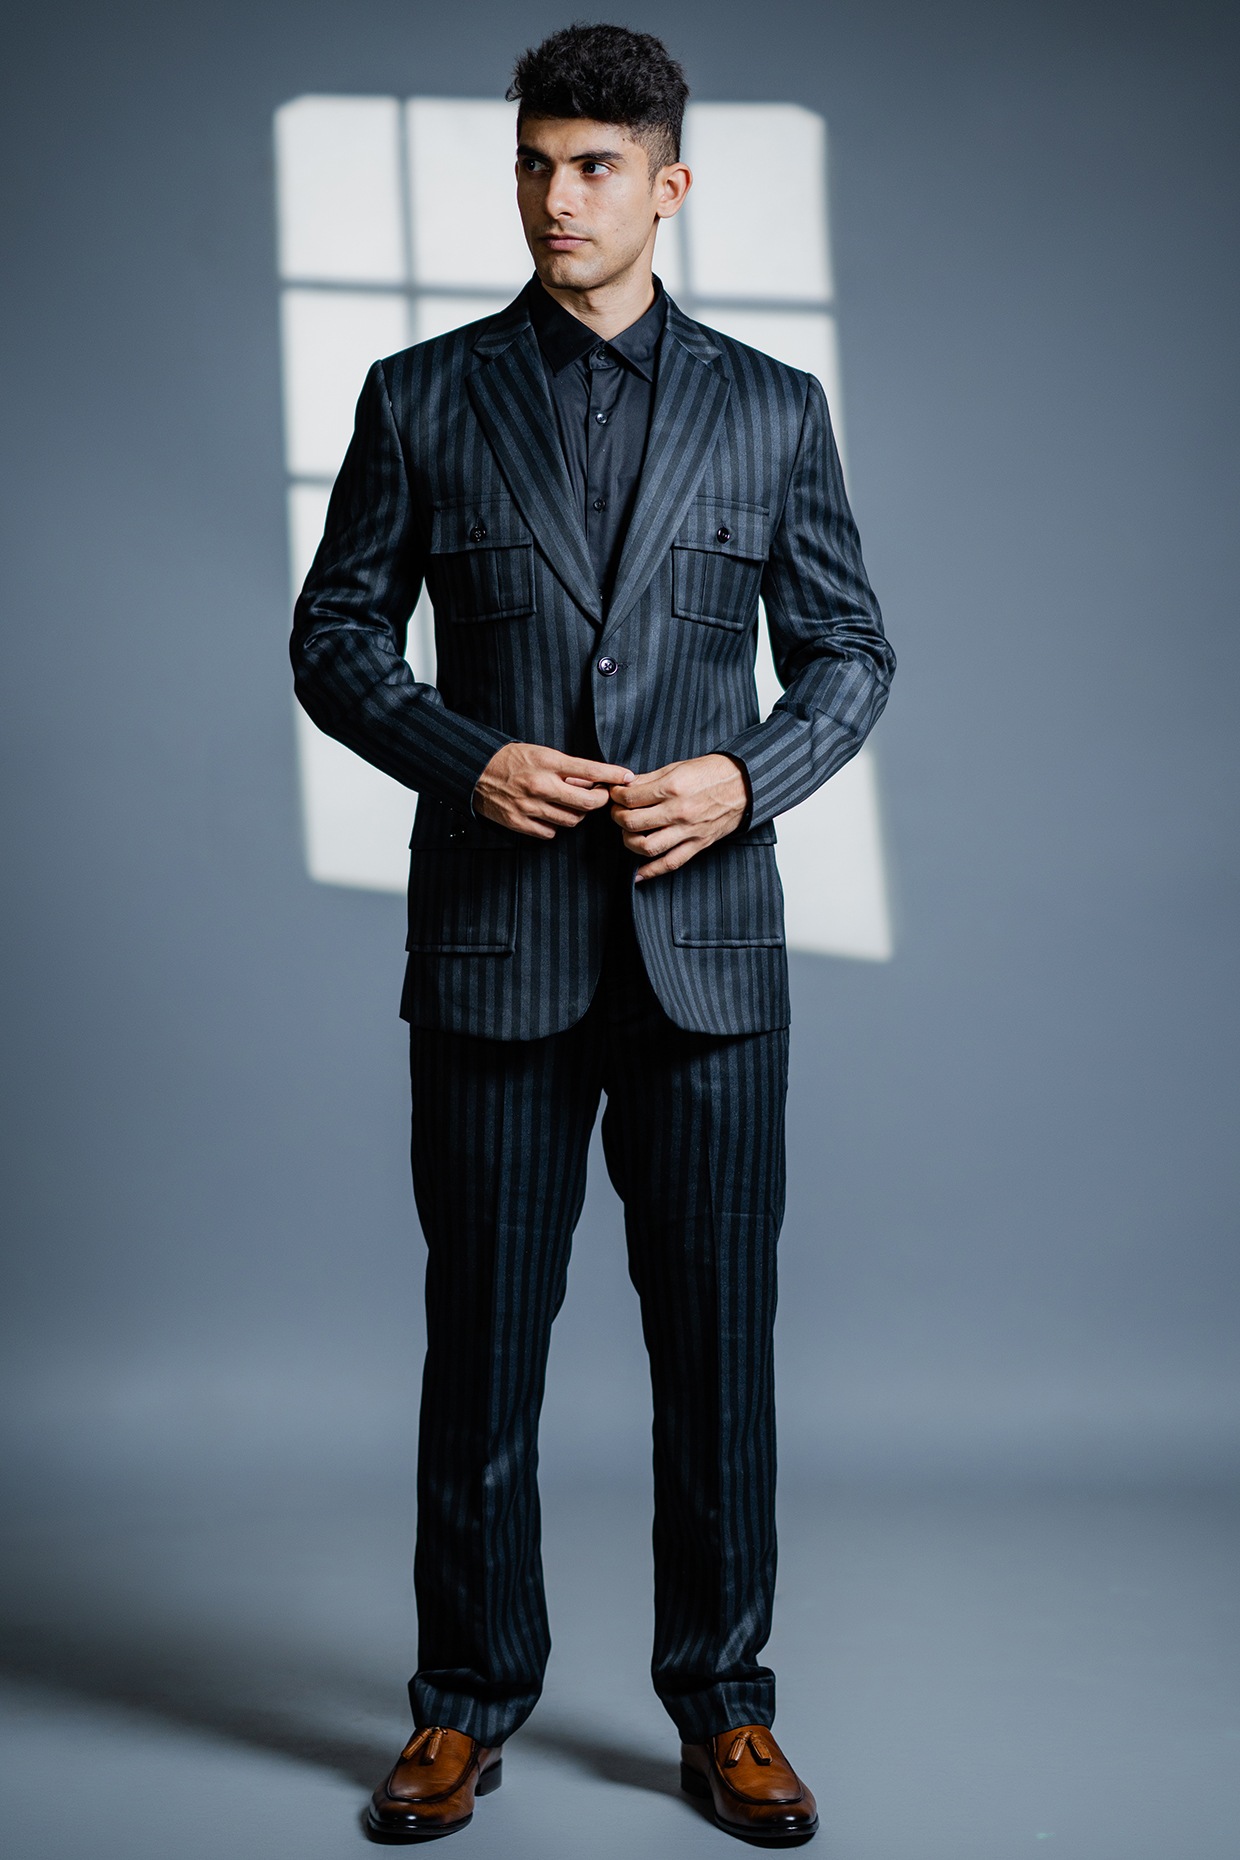 Buy designer suits for men online to look stylish | Designer suits for men, Designer  suits for wedding, Trendy suits